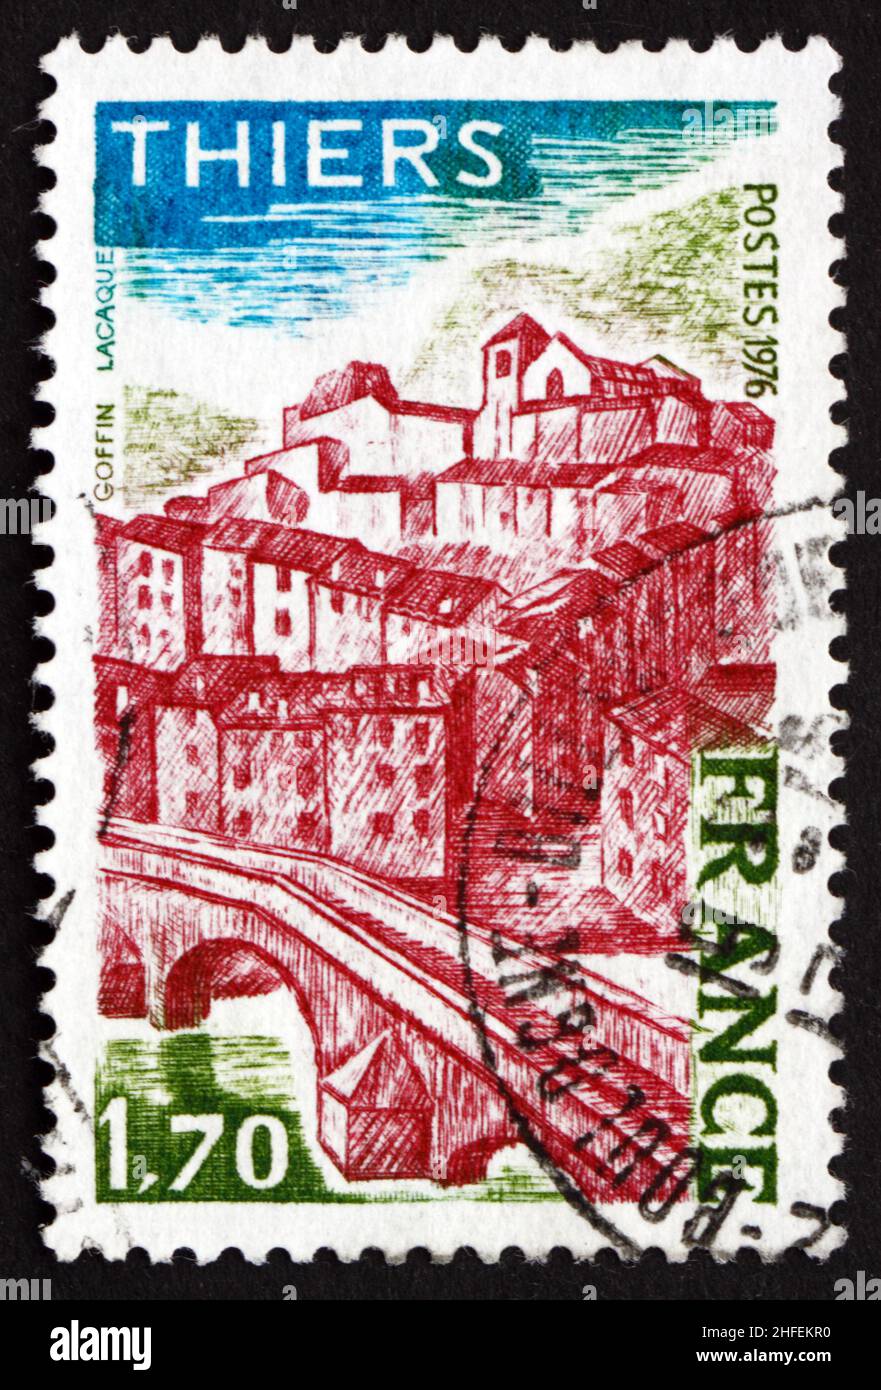 FRANCIA - ALREDEDOR de 1976: Un sello impreso en la vista de los espectáculos de Francia de Thiers, departamento de Puy-de-Dome en Auvernia, alrededor de 1976 Foto de stock